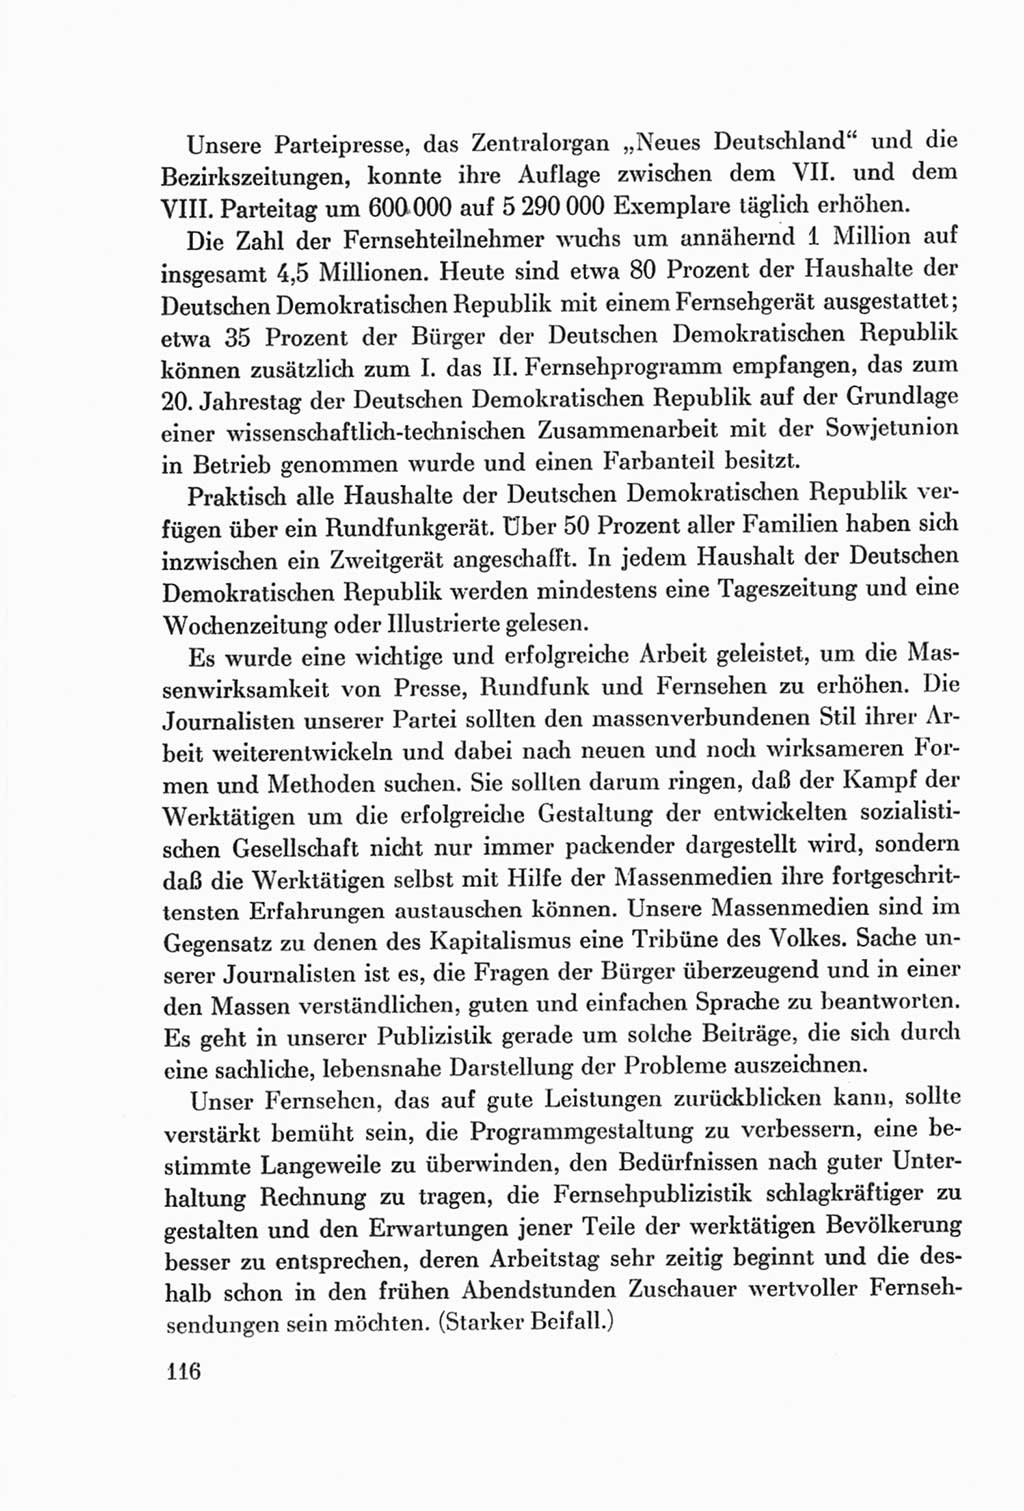 Protokoll der Verhandlungen des Ⅷ. Parteitages der Sozialistischen Einheitspartei Deutschlands (SED) [Deutsche Demokratische Republik (DDR)] 1971, Band 1, Seite 116 (Prot. Verh. Ⅷ. PT SED DDR 1971, Bd. 1, S. 116)